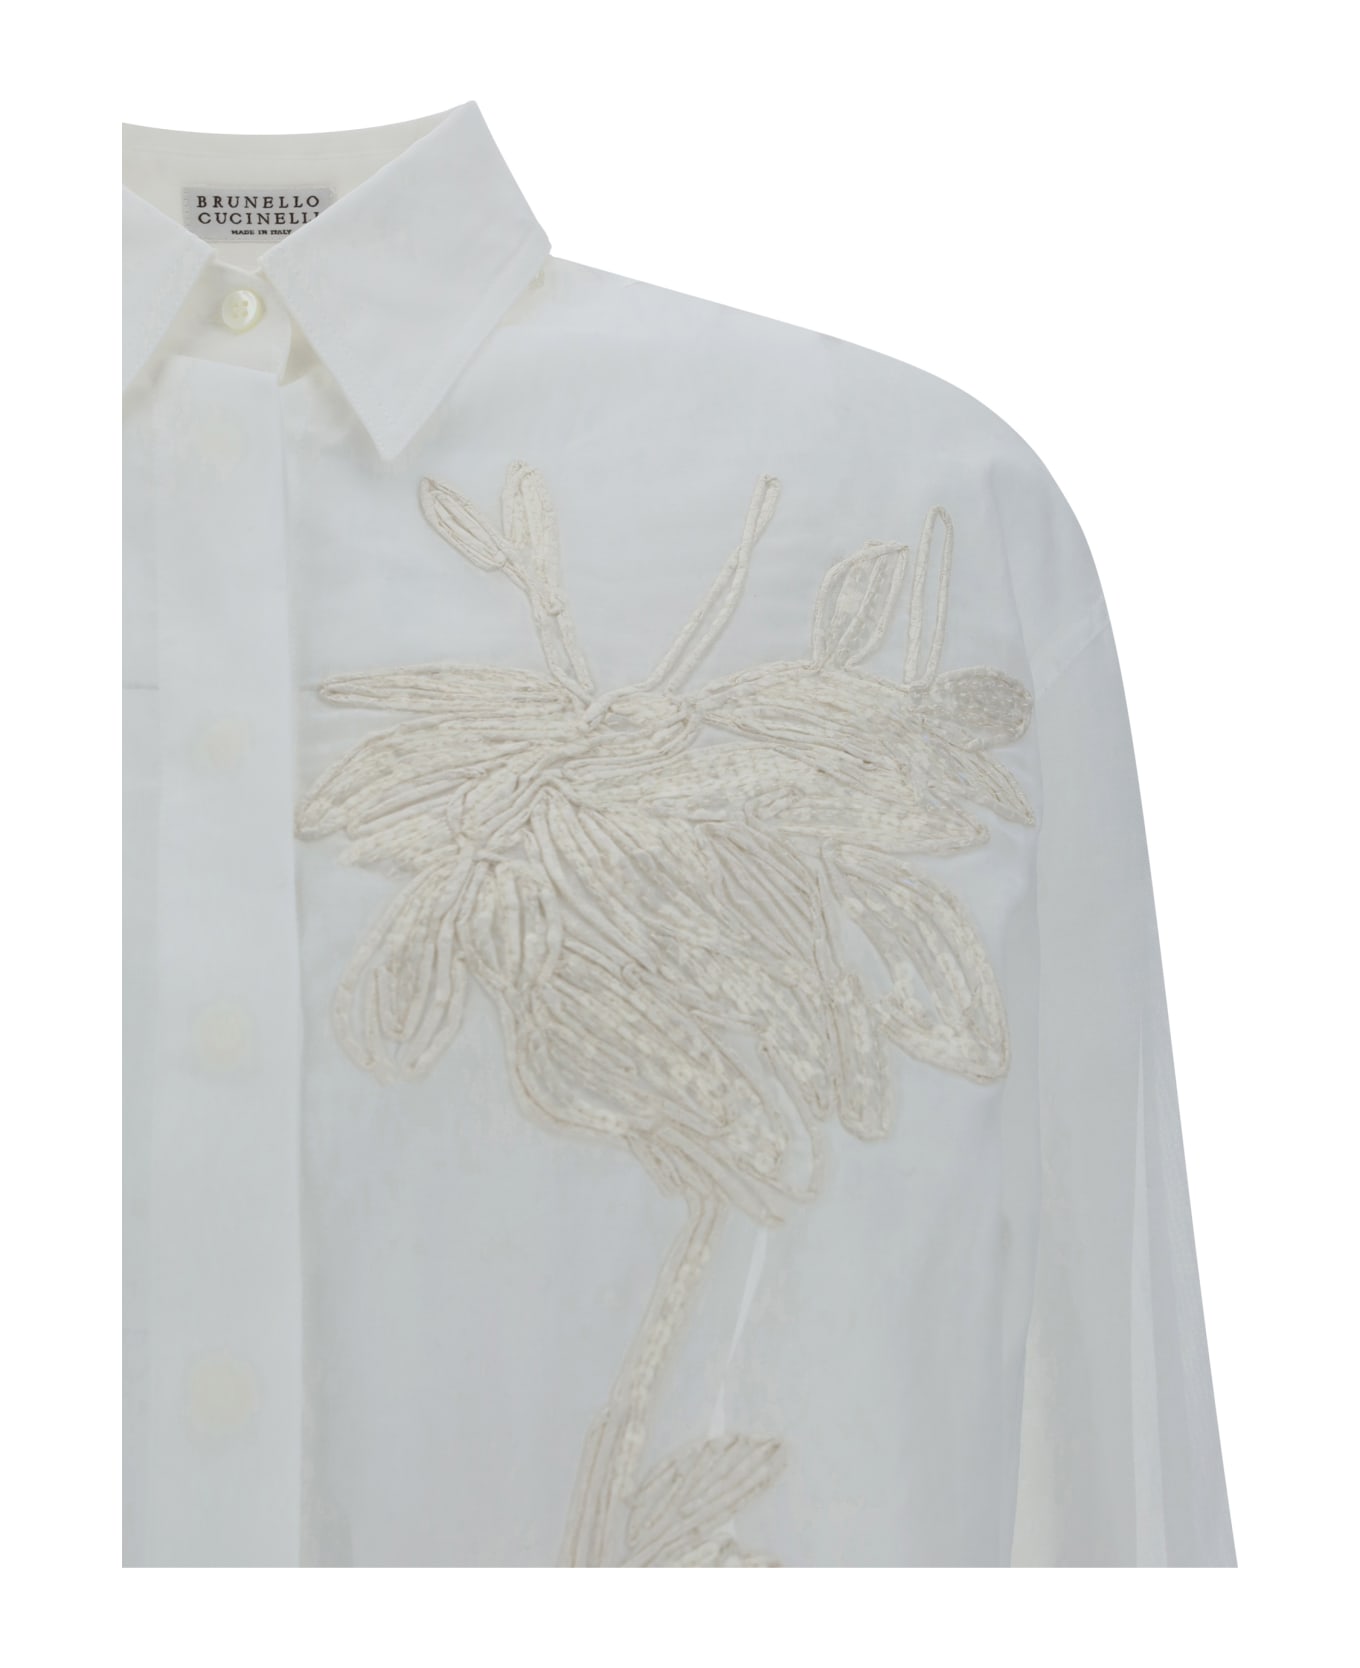 Brunello Cucinelli Floral Embroidery Shirt - Bianco Ottico